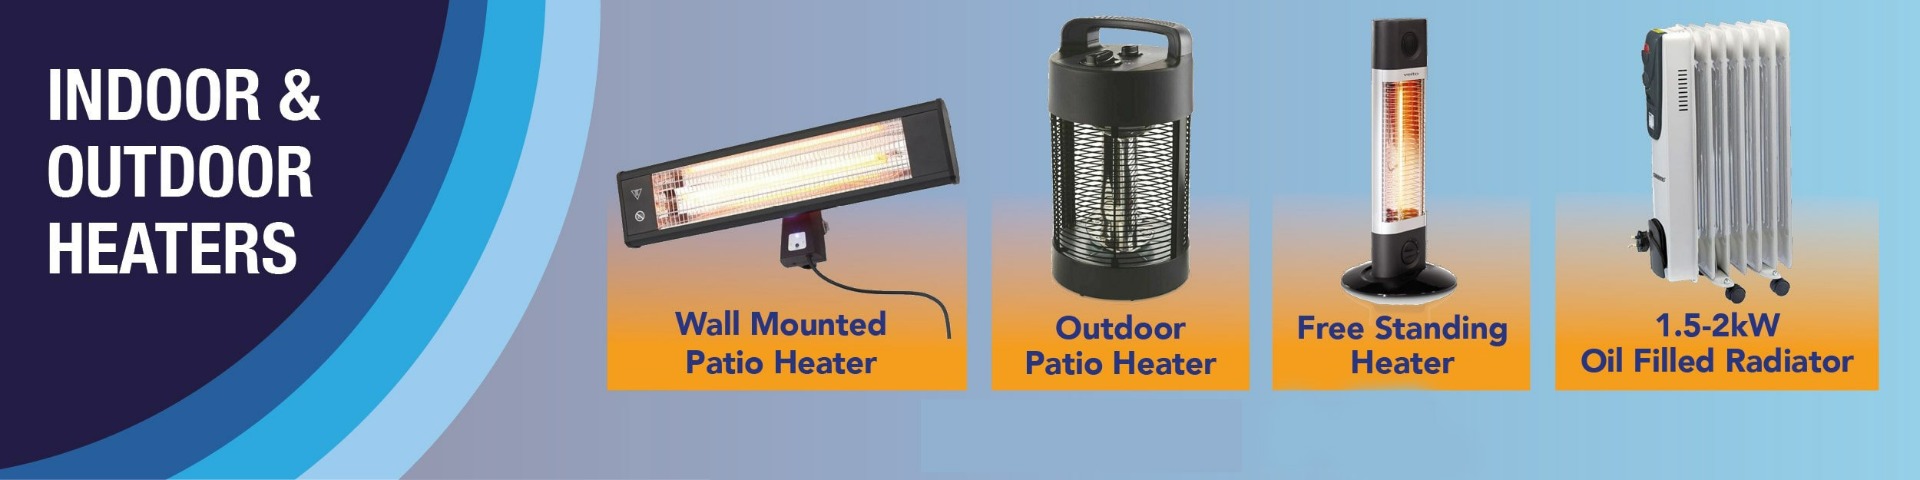 lightsave online indoor and outdoor heaters